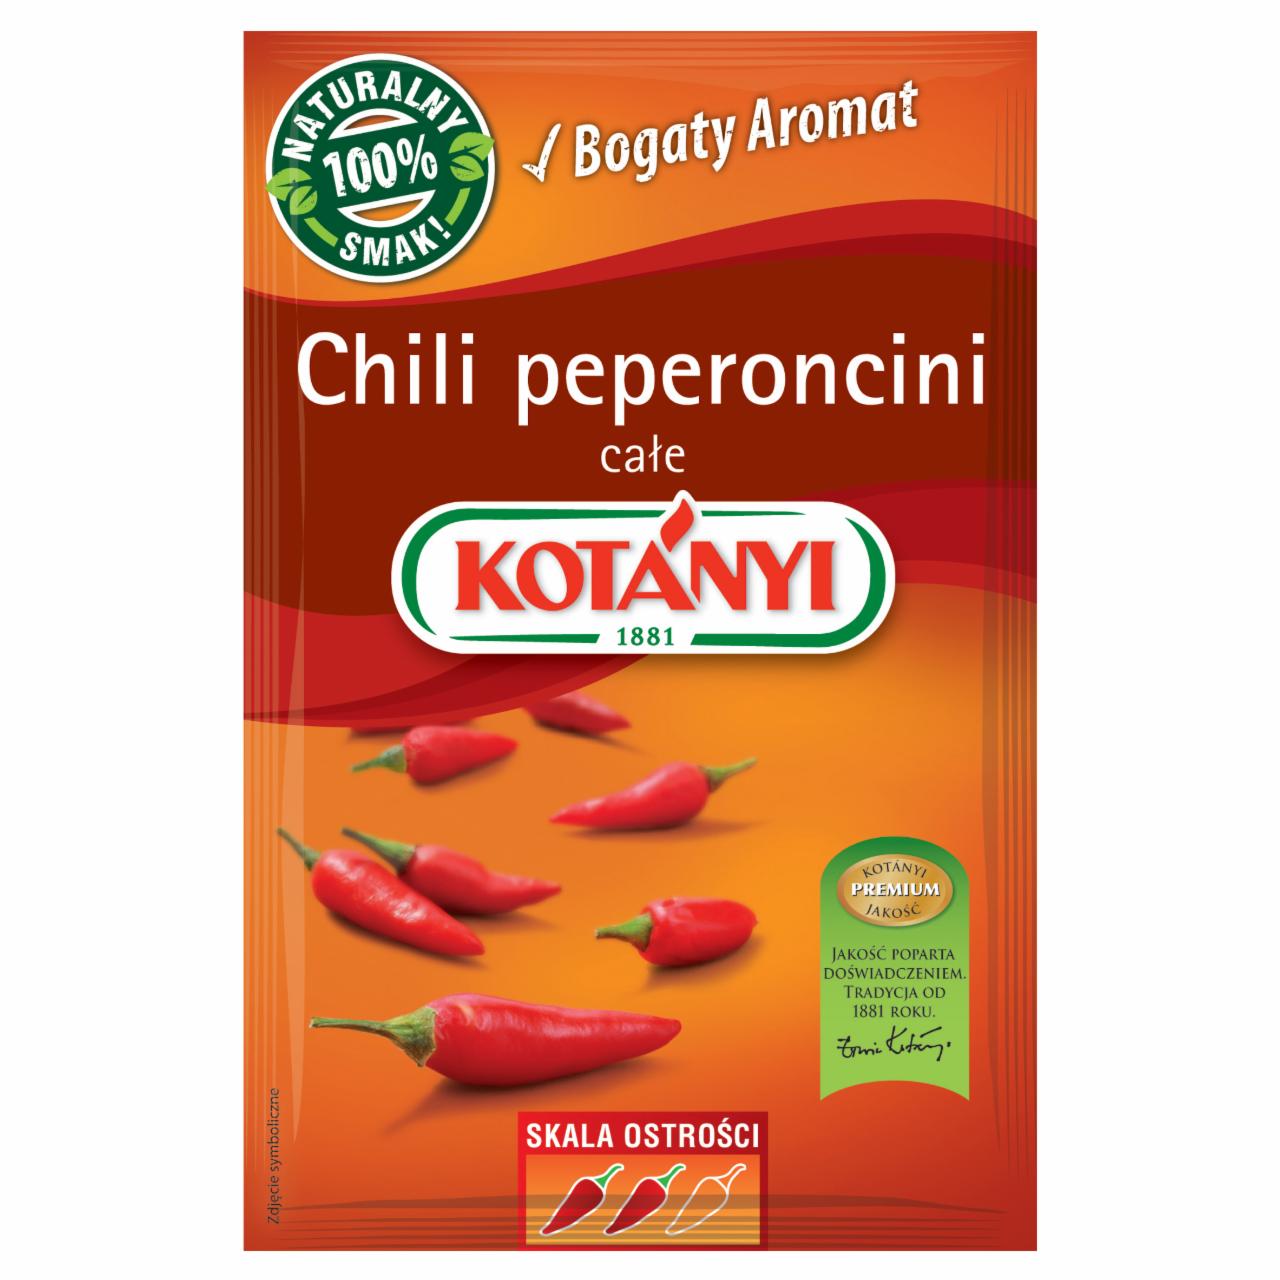 Zdjęcia - Chili peperoncini całe 8 g Kotányi